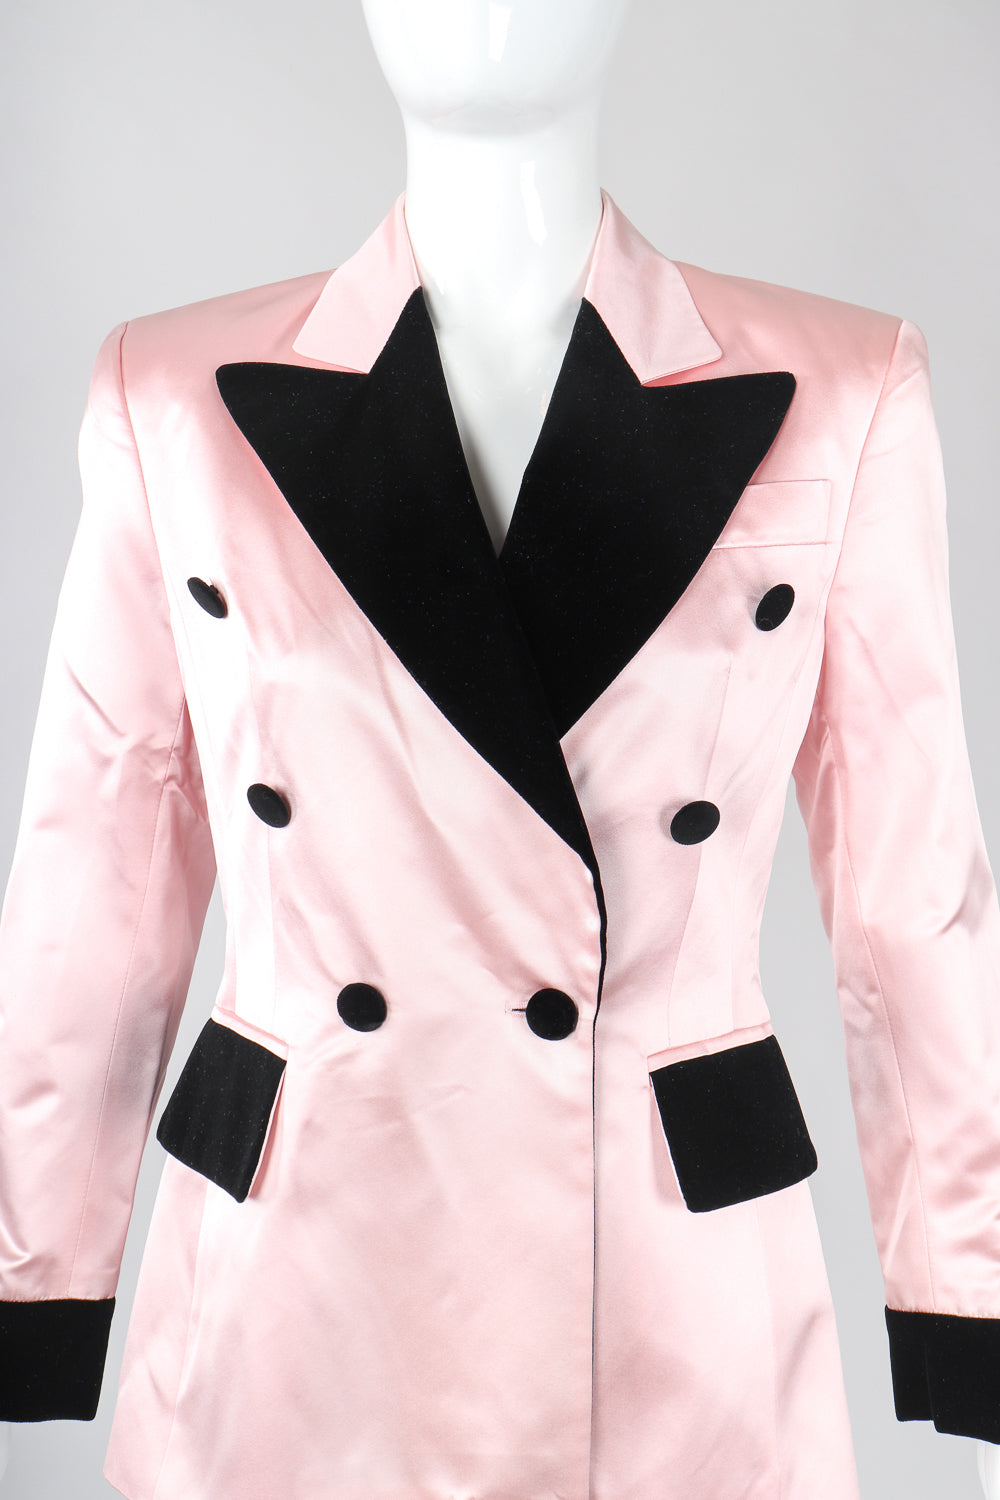 Recess Designer Consignment Vintage Escada Satin Contrast Tuxedo Jacket Los Angeles Resale